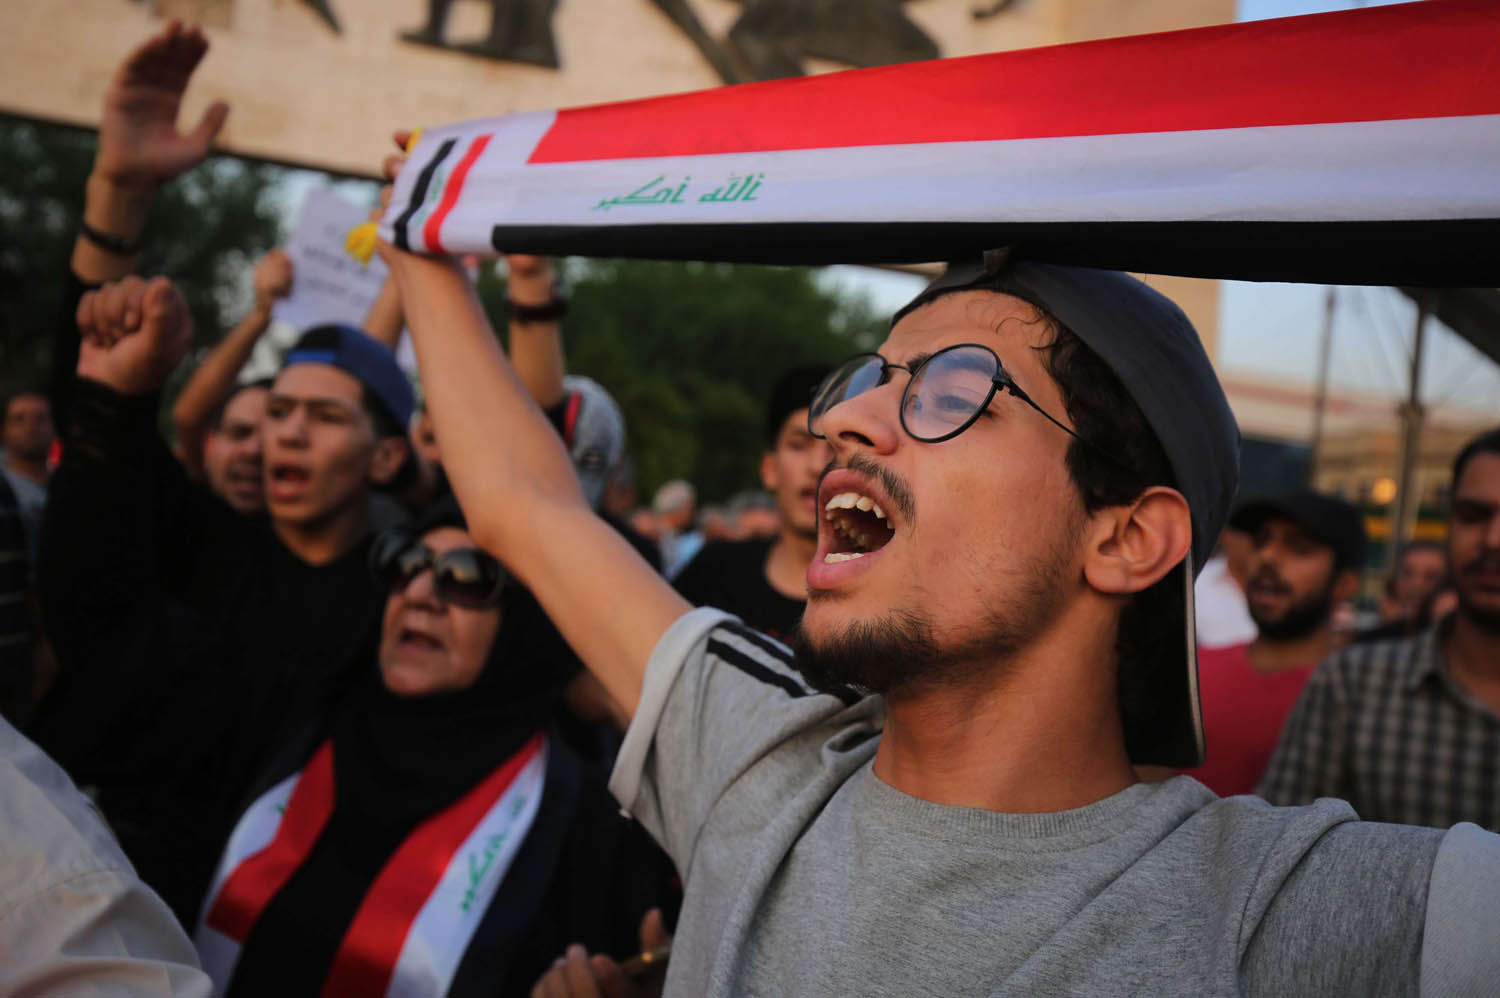 متظاهر عراقي يحتج على الحكومة والفساد في ساحة التحرير ببغداد